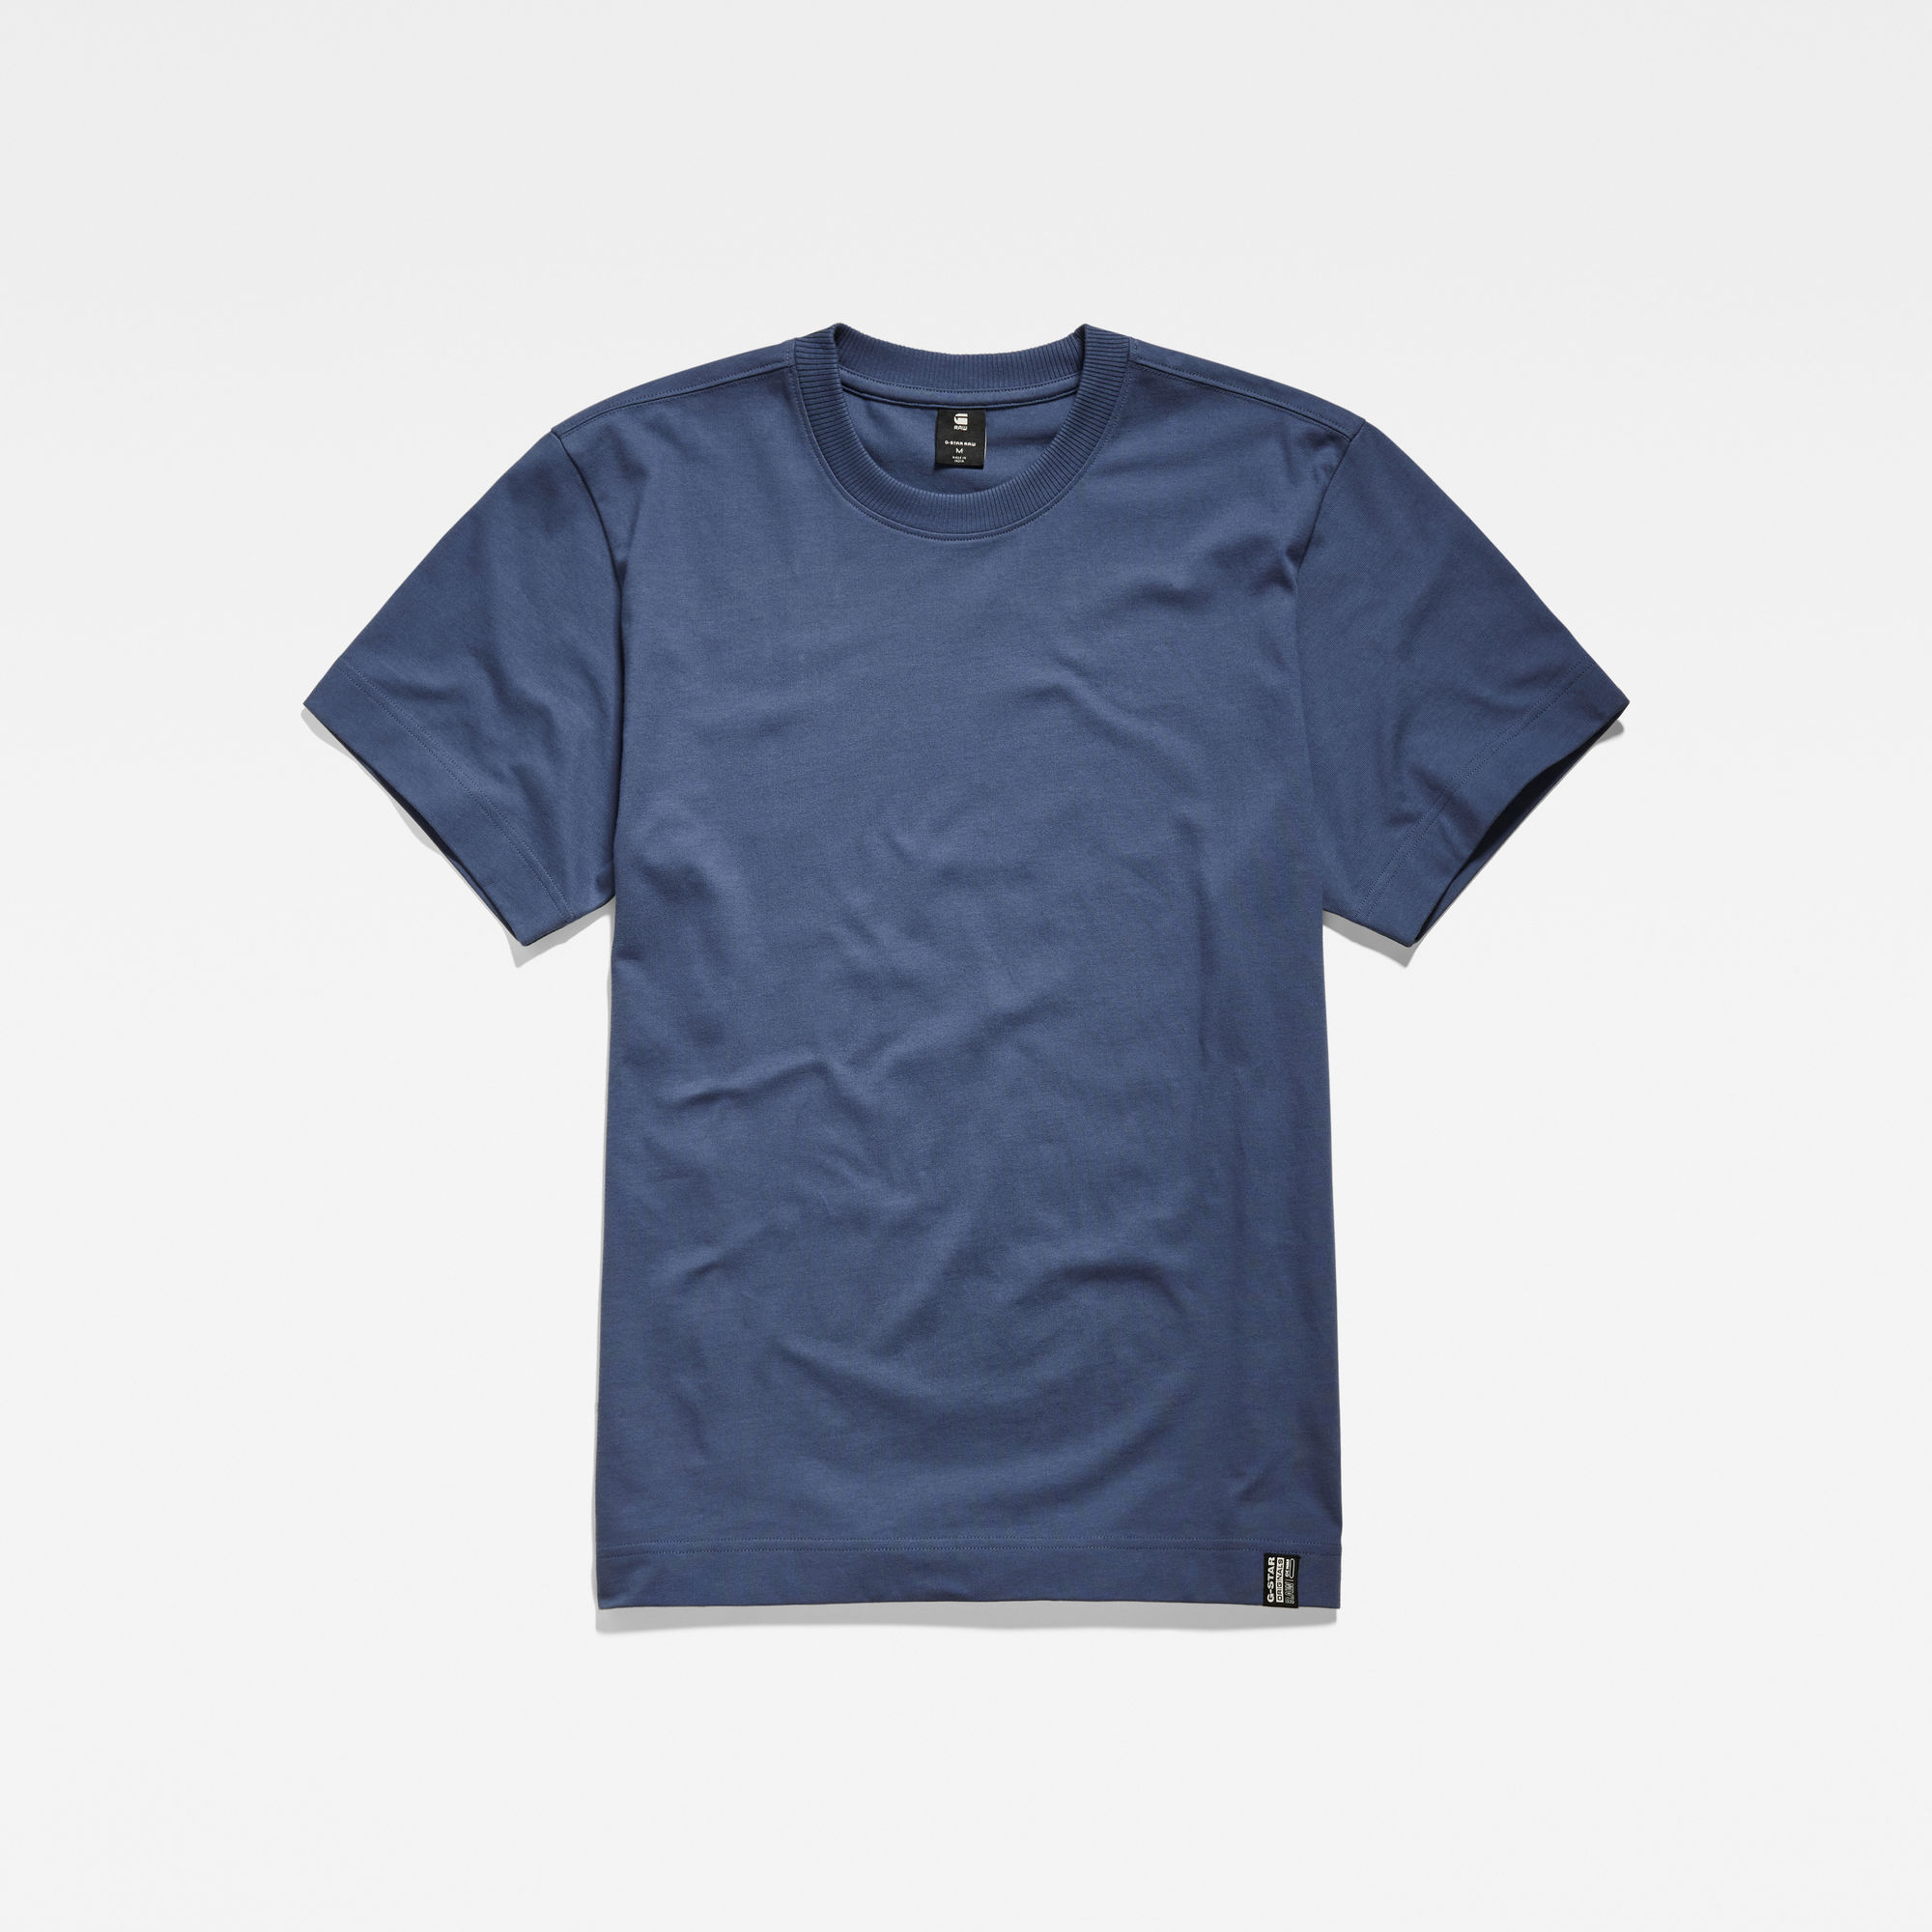 G-Star RAW Essential Loose T-Shirt Midden blauw Heren